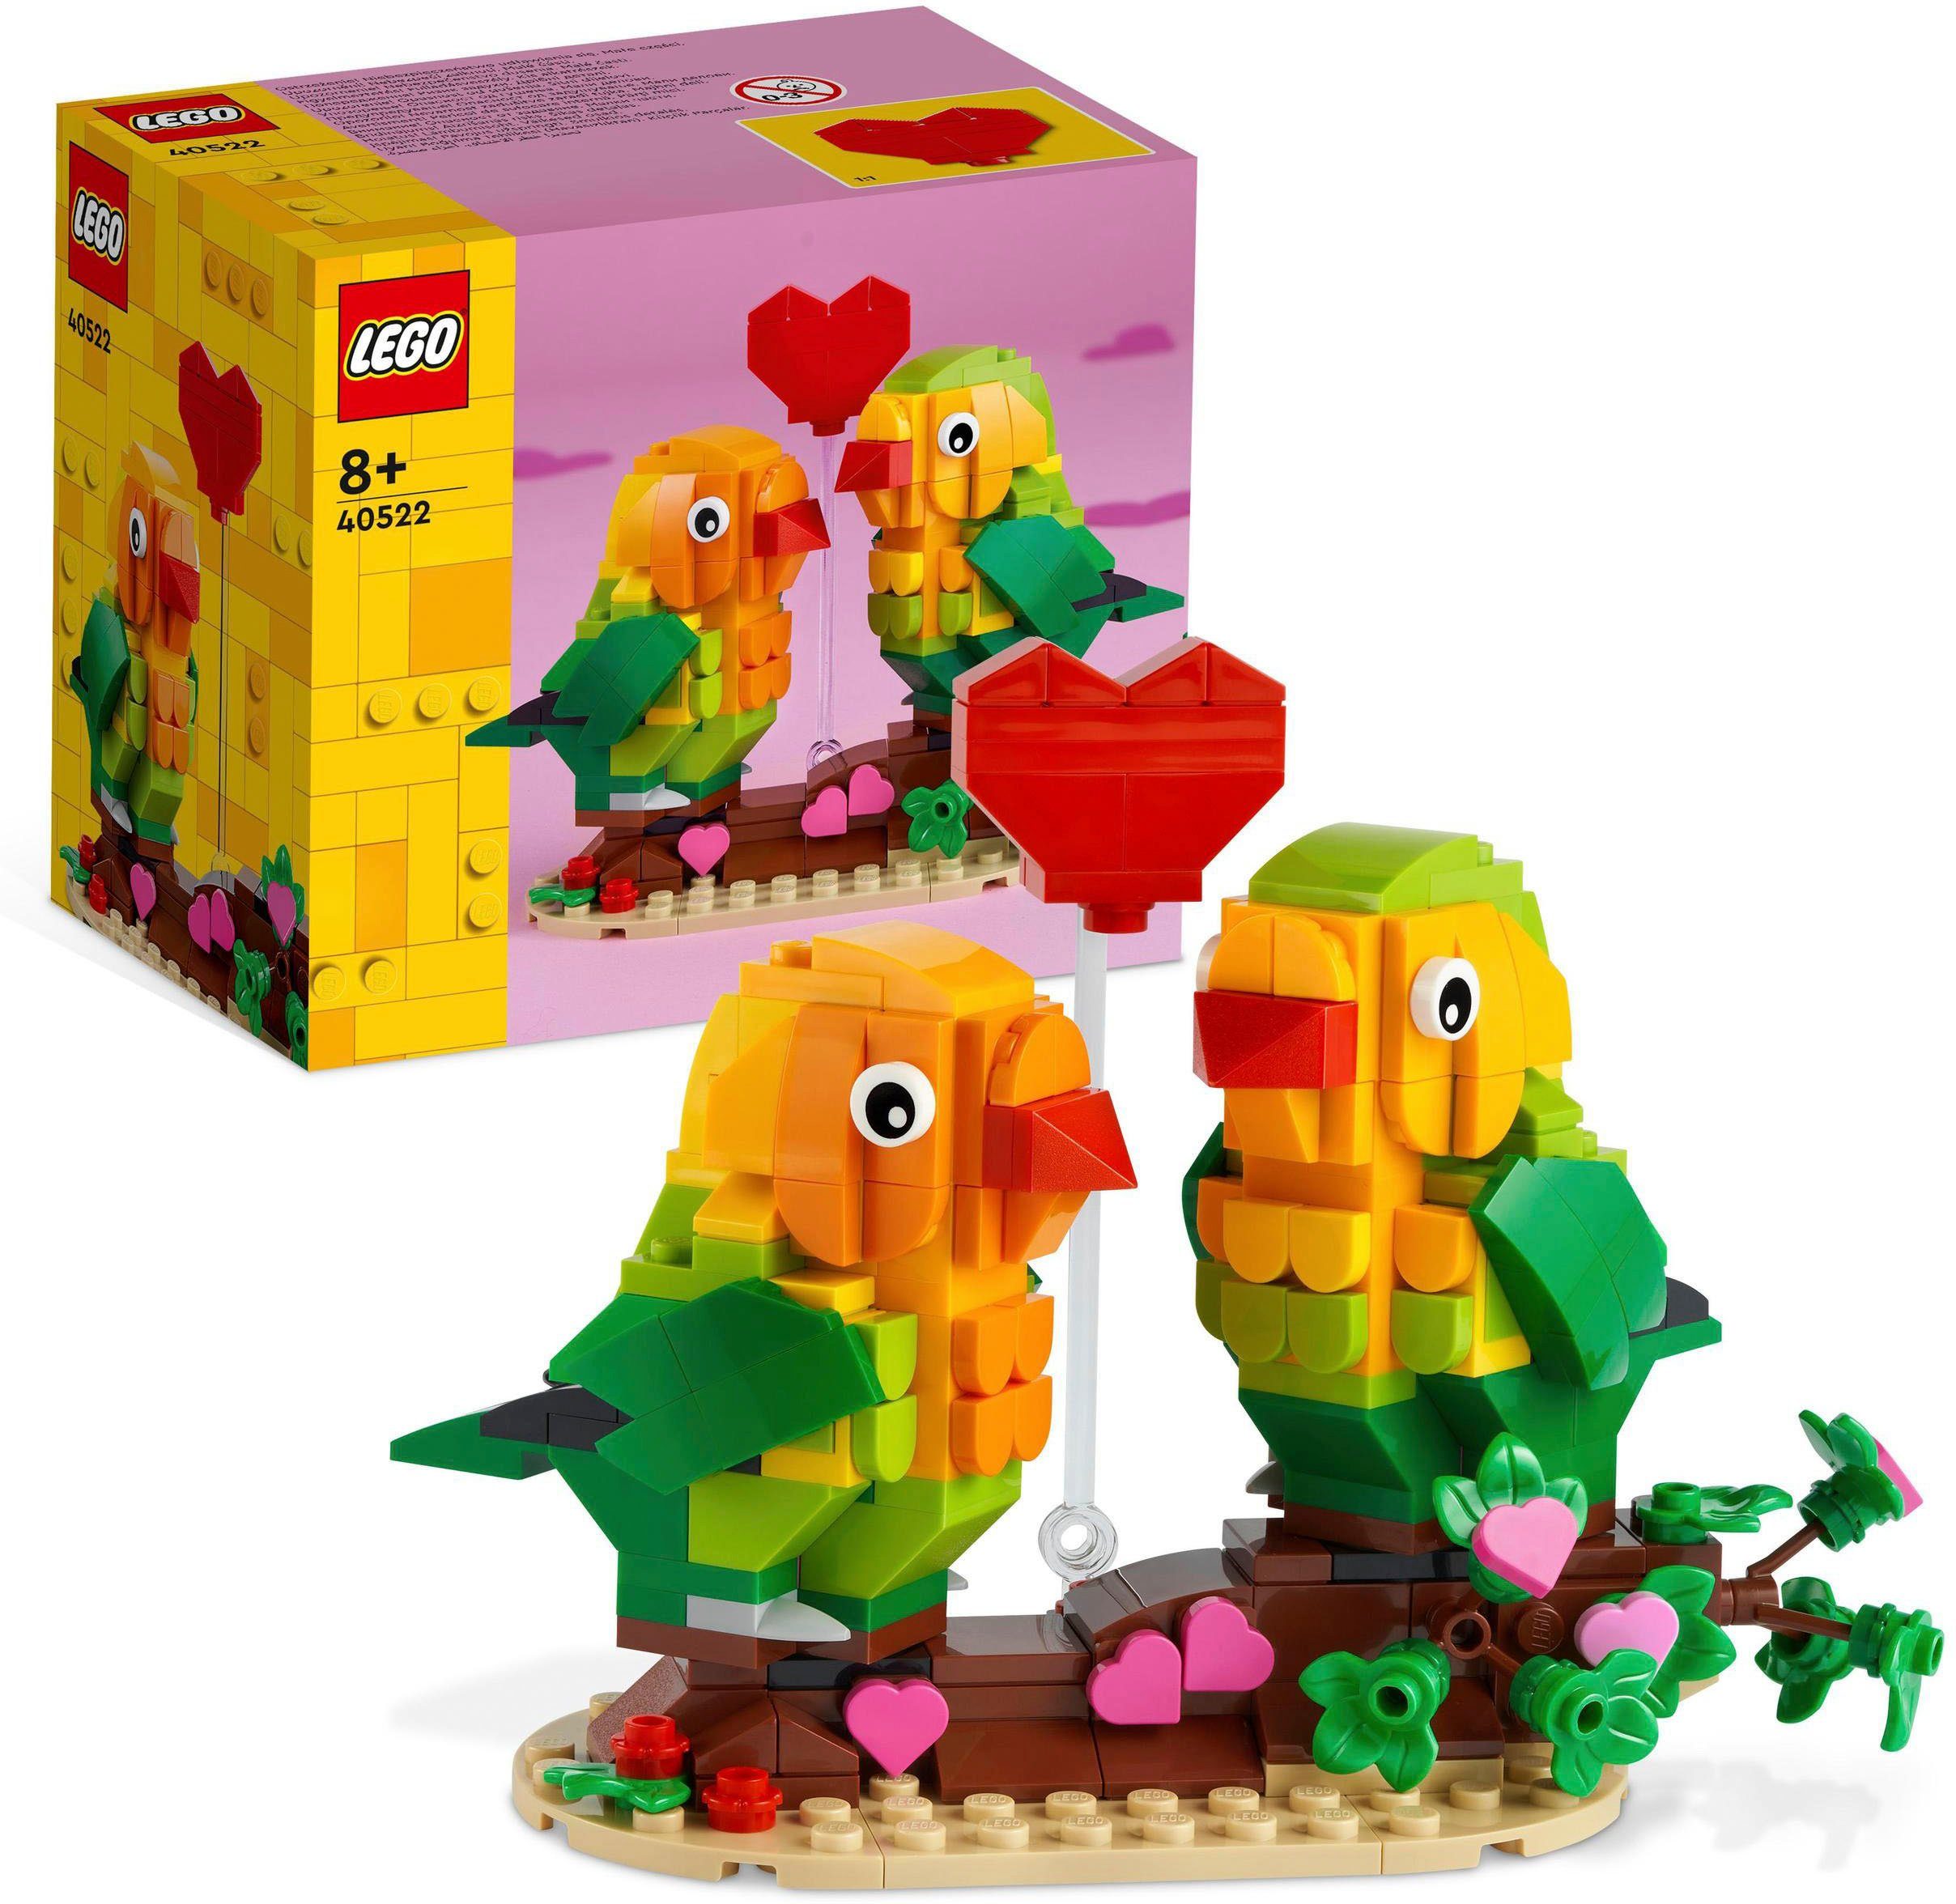 Made Europe in St), Valentins-Turteltauben LEGO® Konstruktionsspielsteine (40522), LEGO®, (298